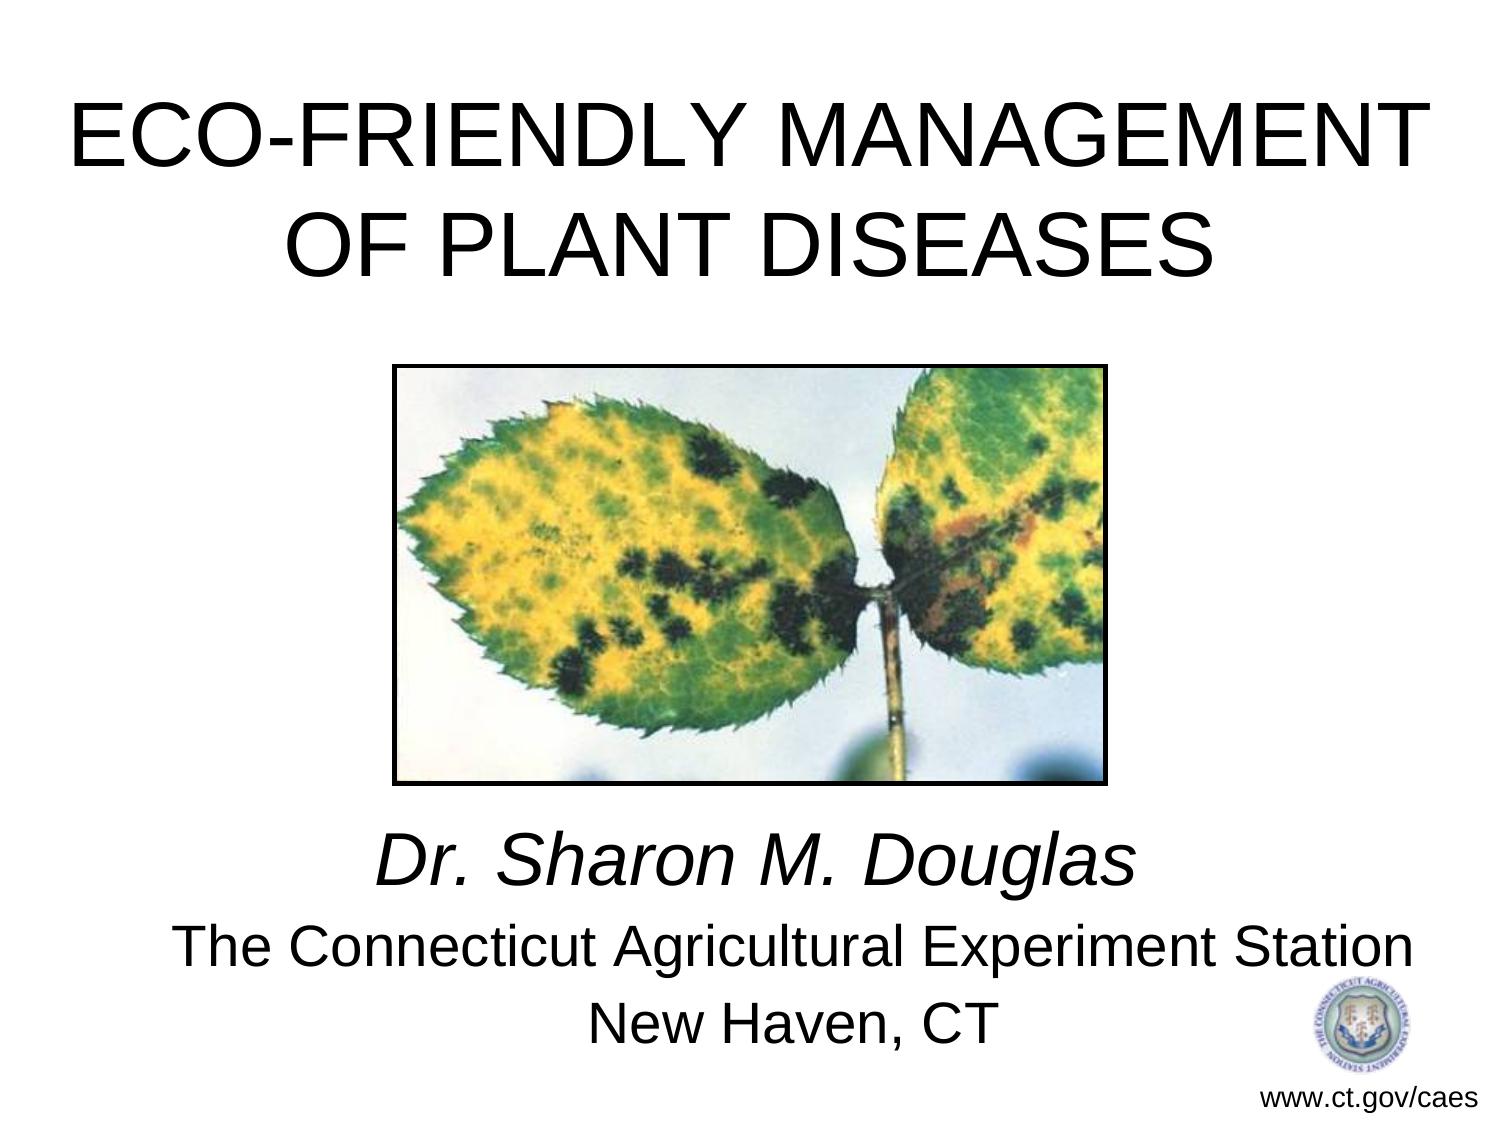 UNDERSTANDING PLANT DISEASES